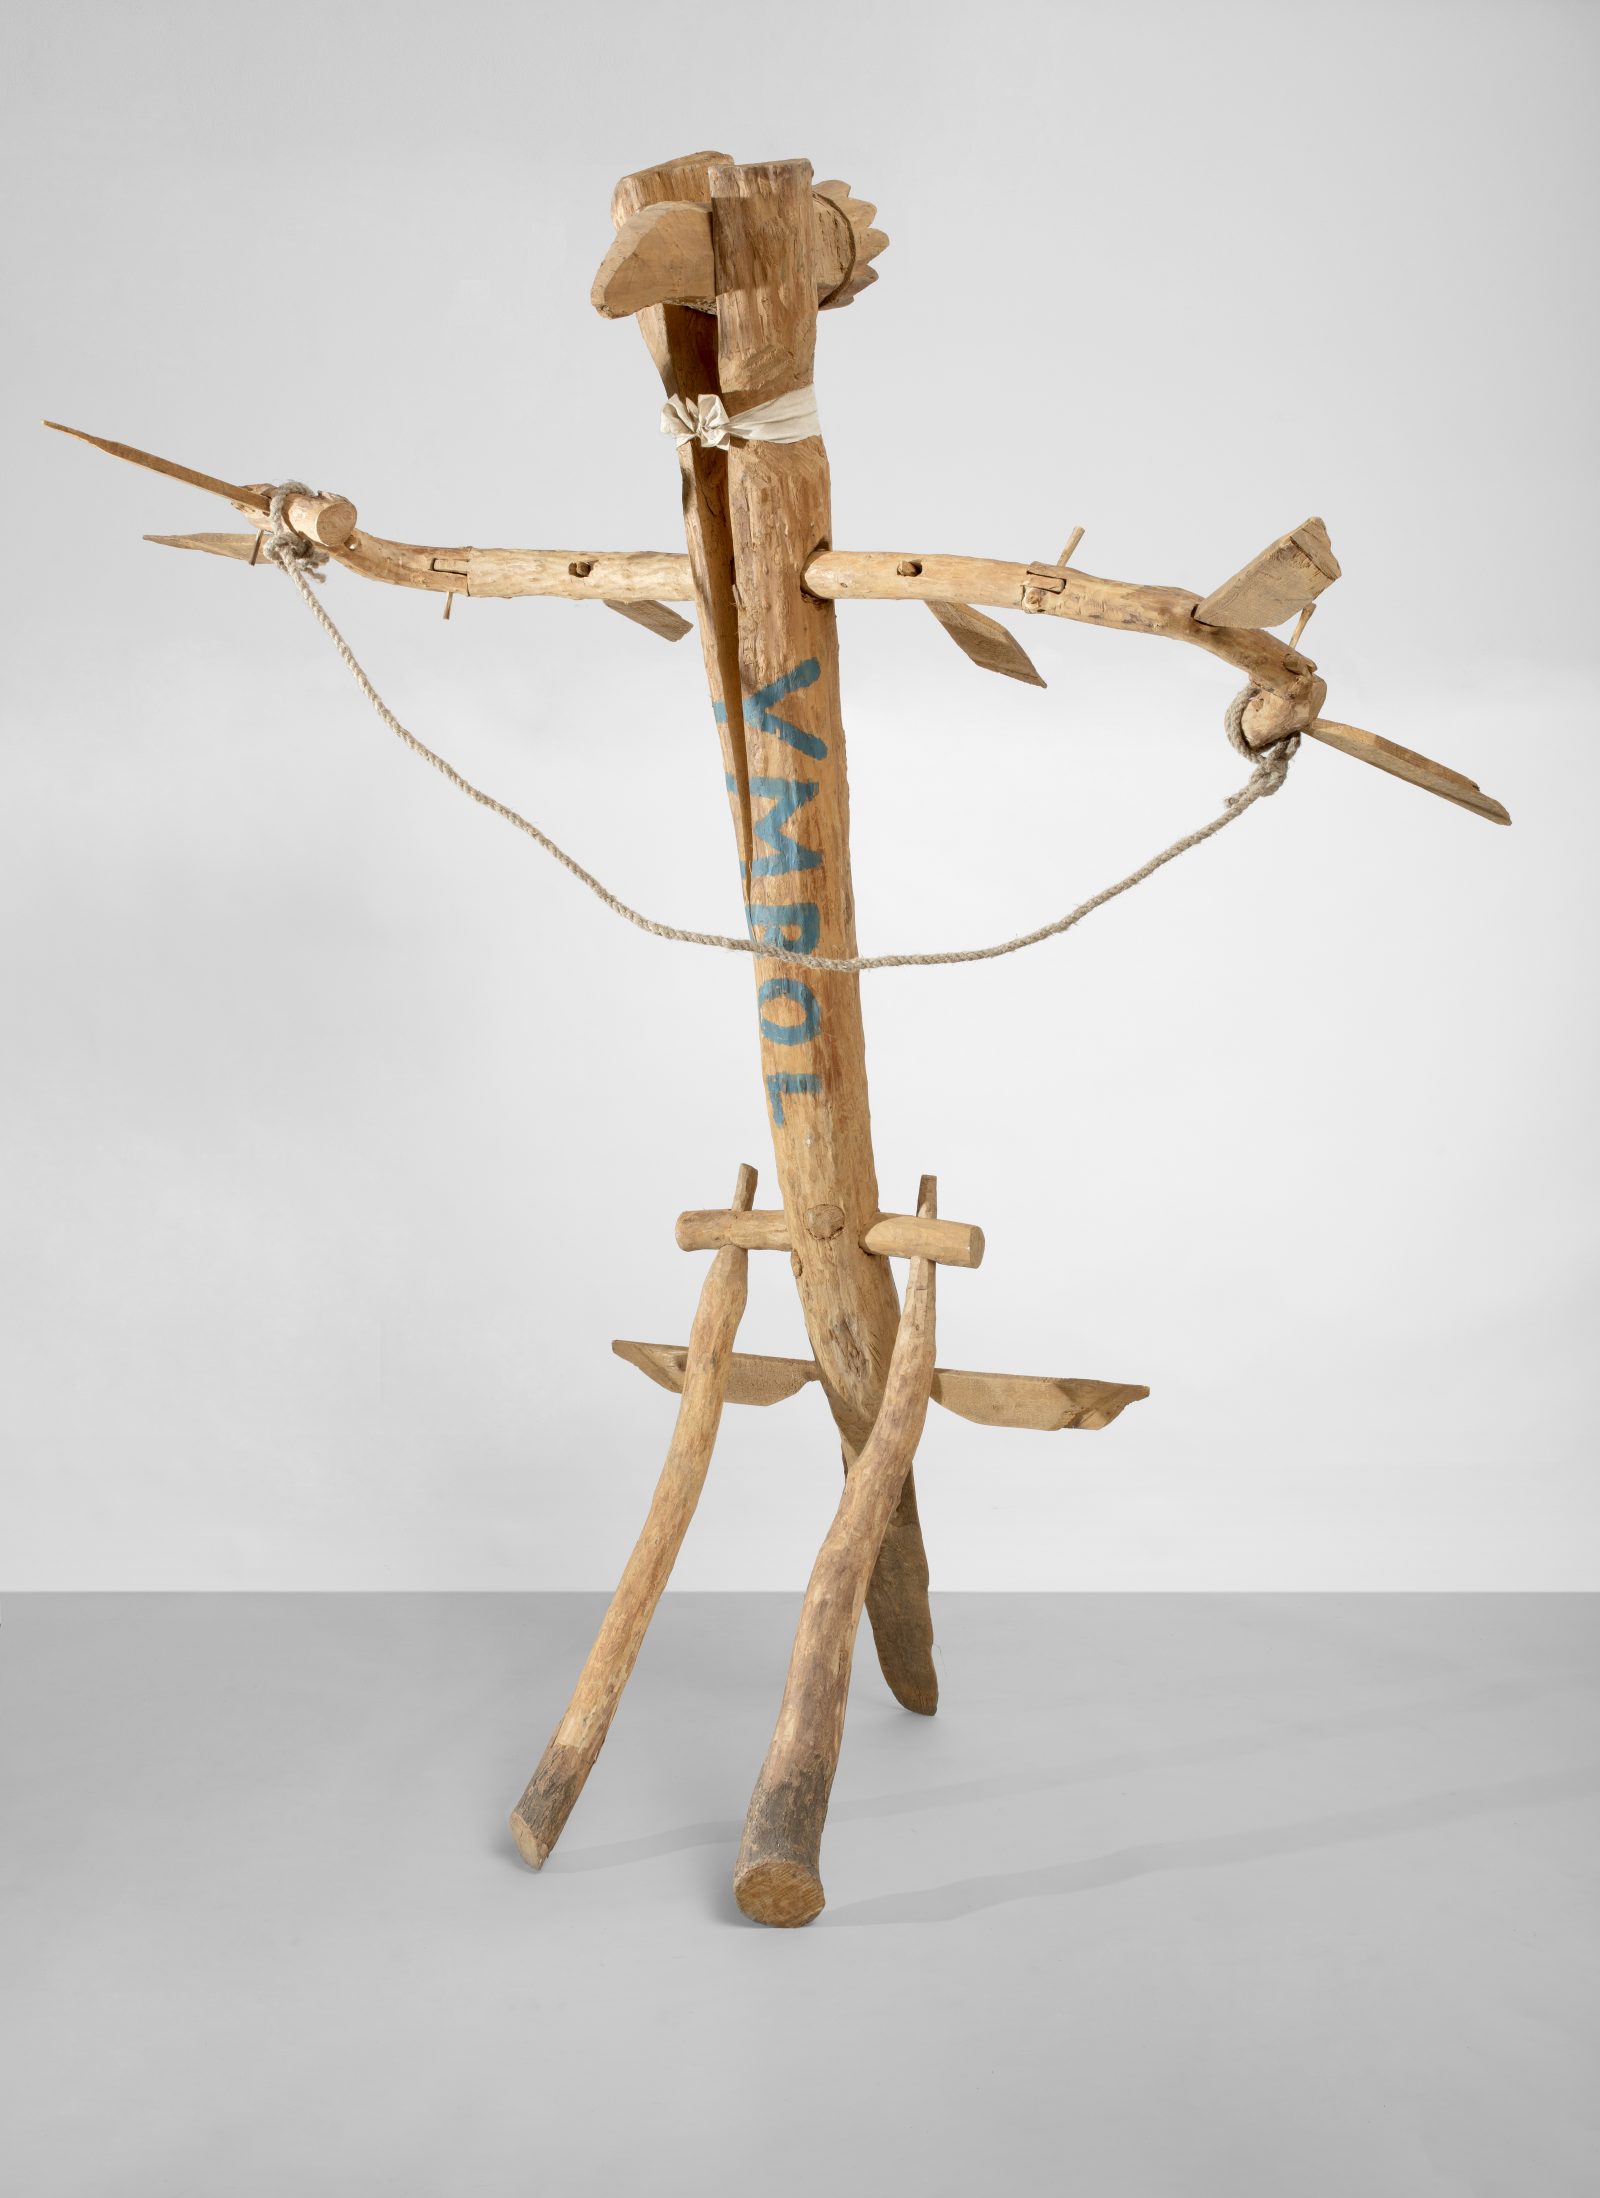 Jerzy Bereś, Ymbol, 1987
wood, hemp rope, acrylic
270 × 240 × 180 cm